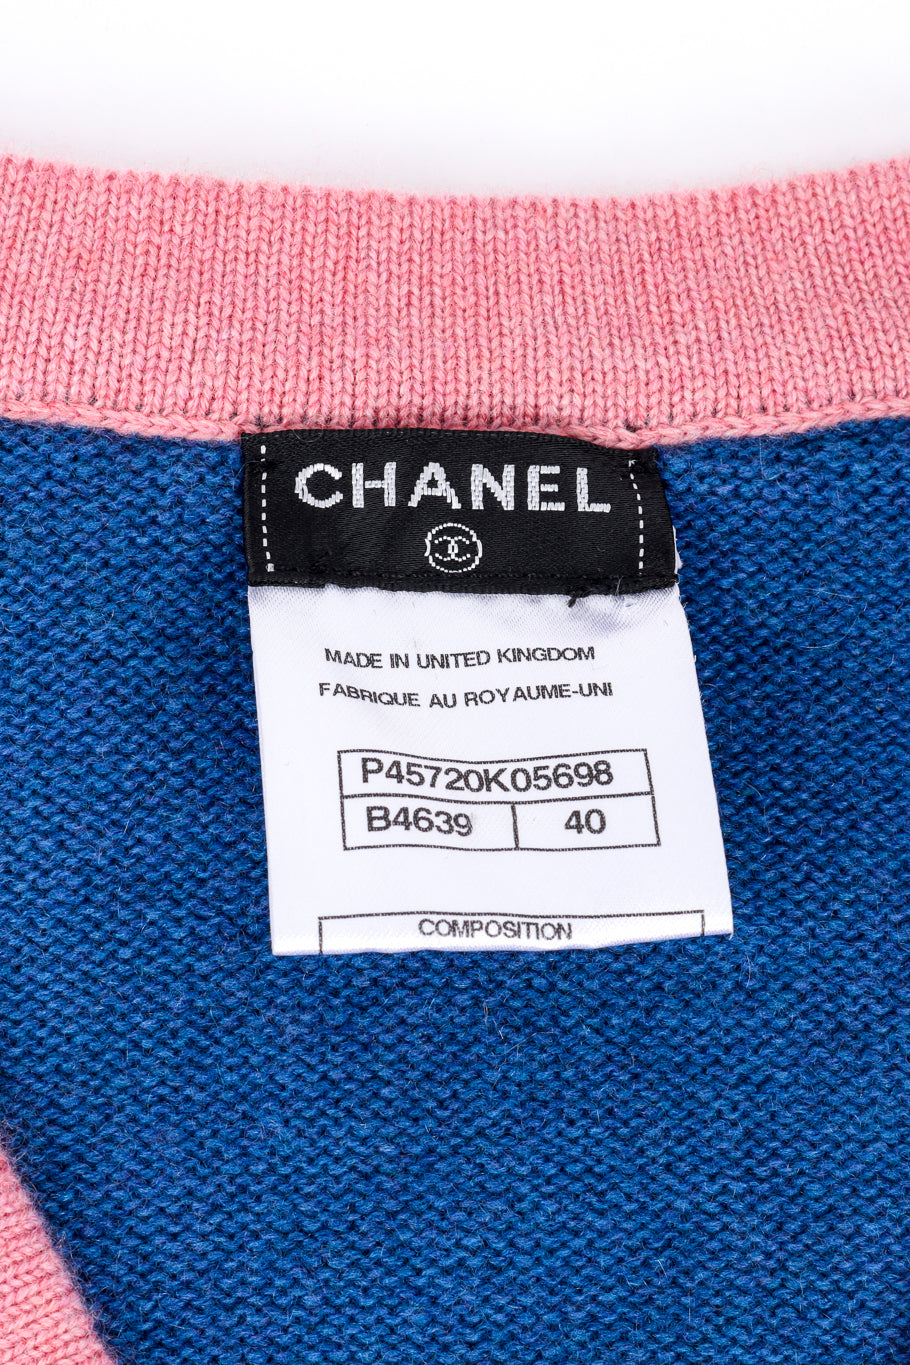 Chanel Cashmere Sweater signature label @recess la